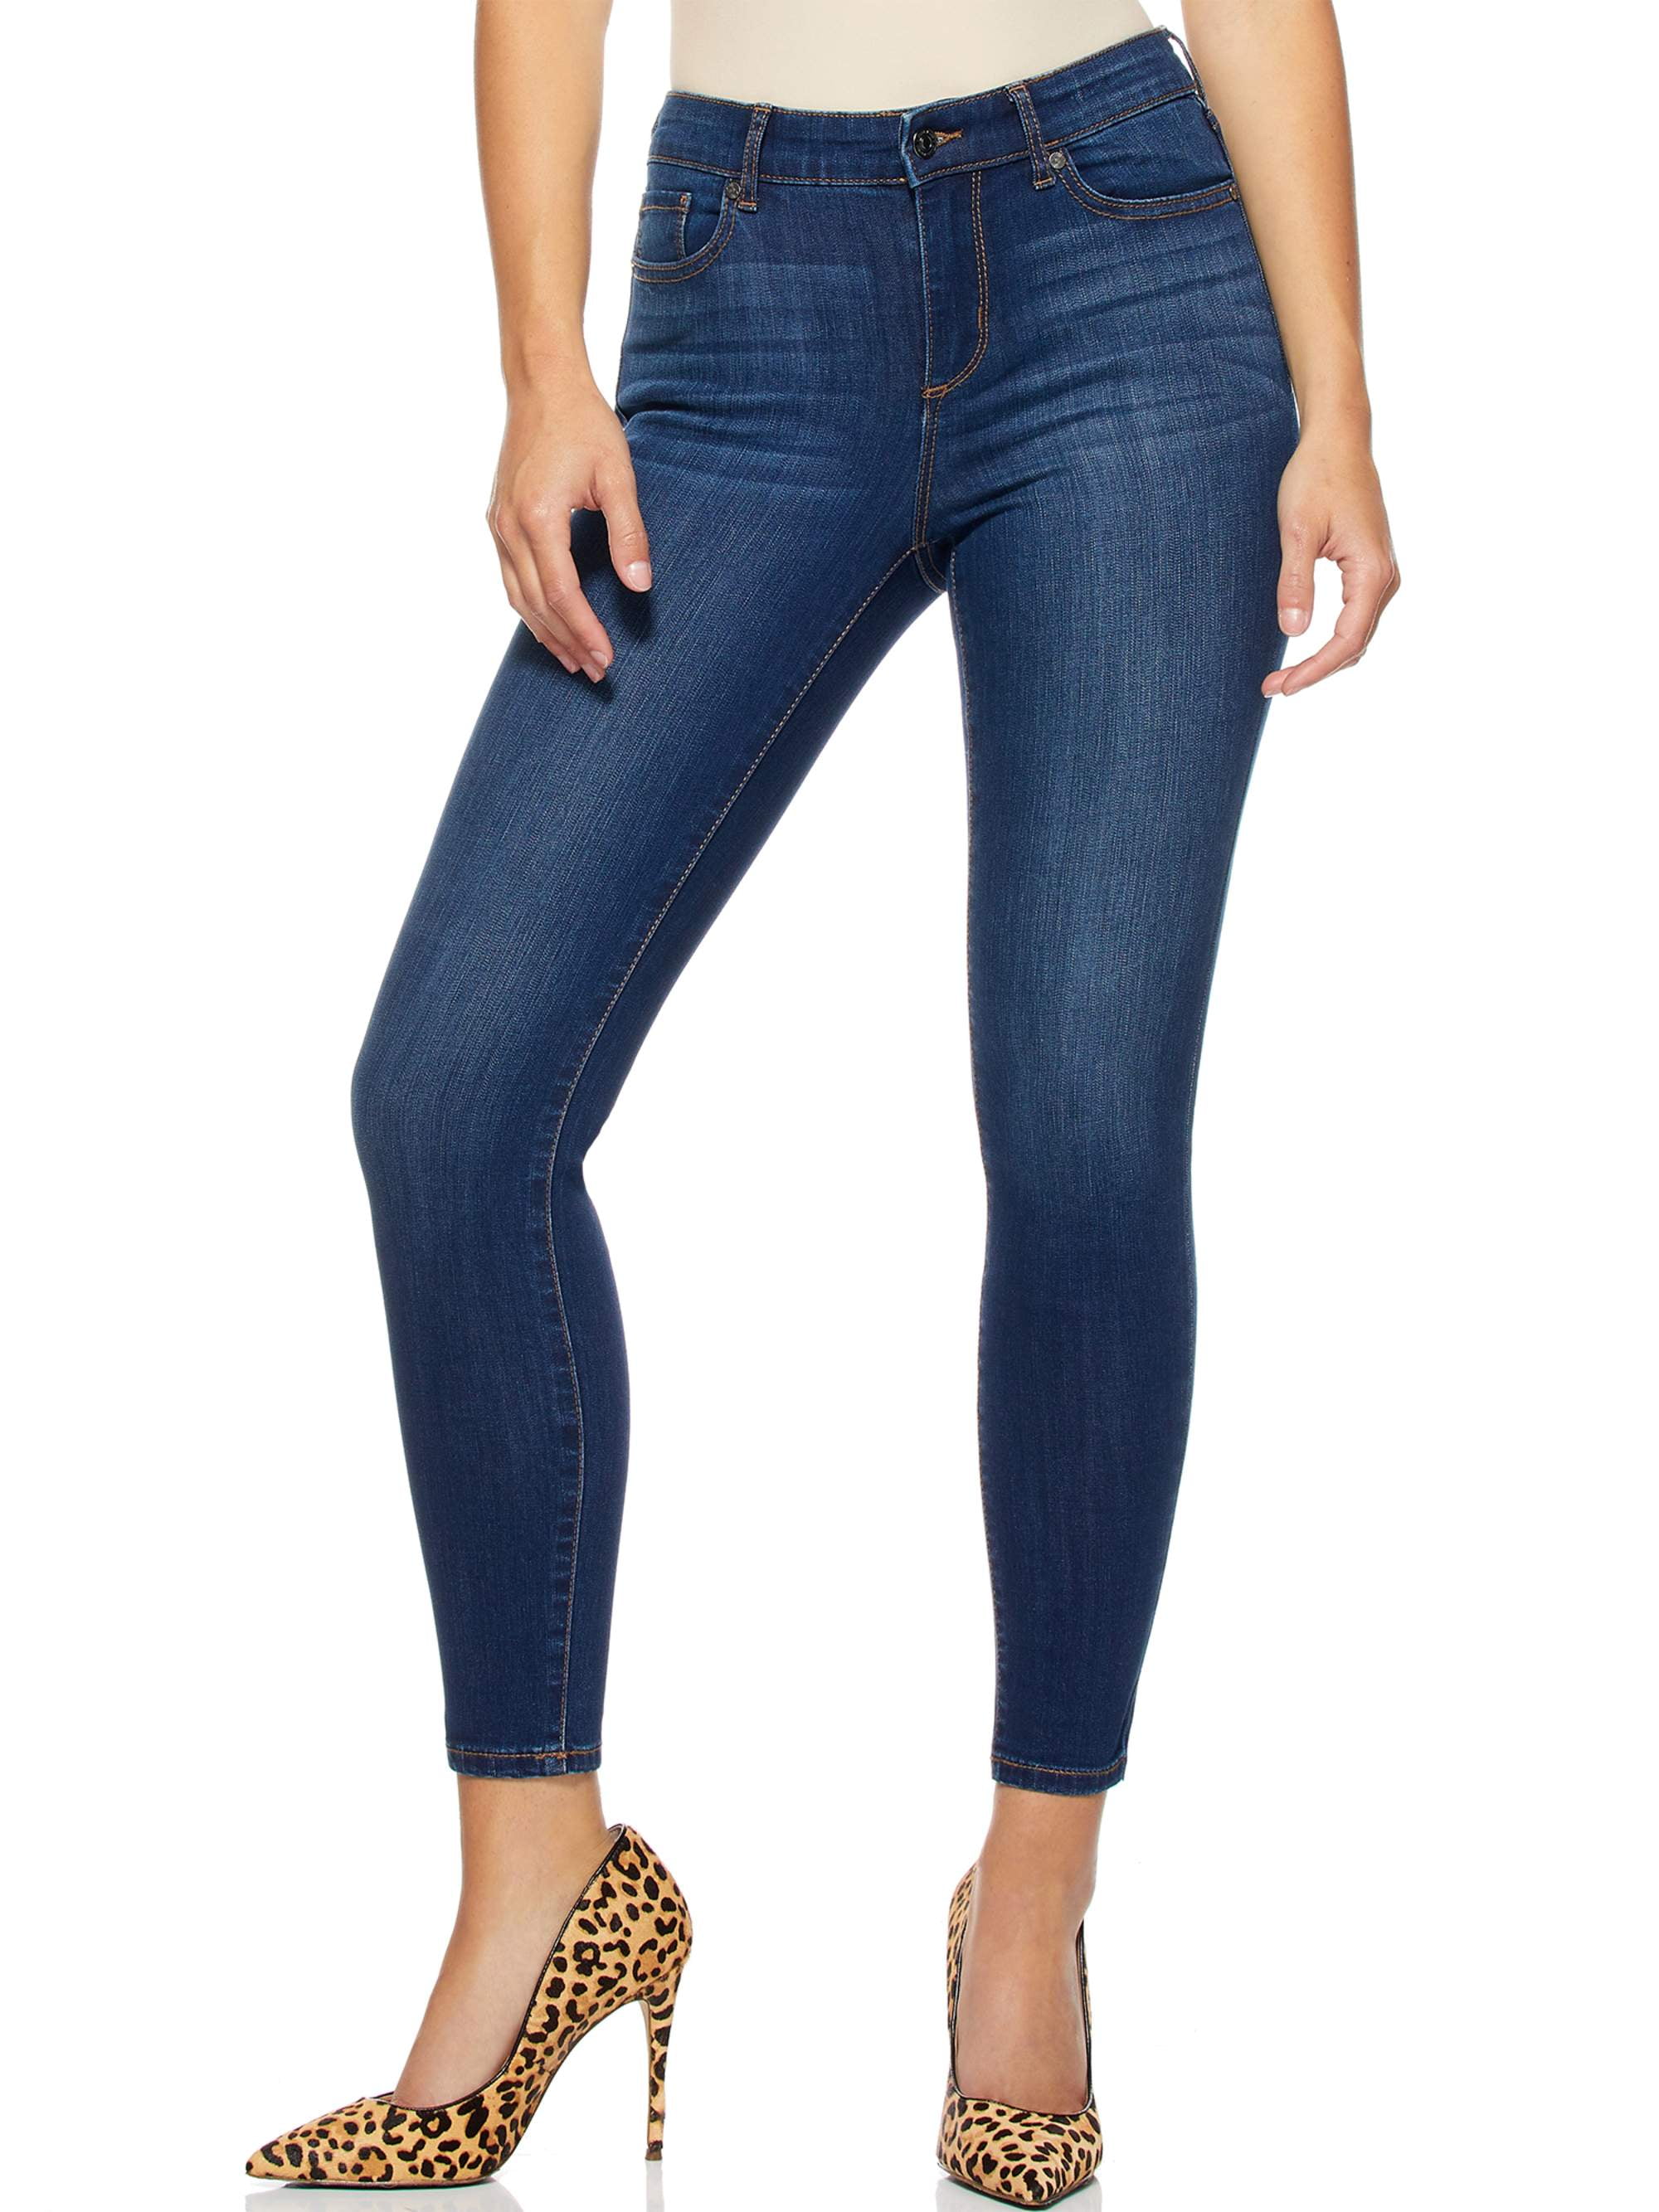 Sofia Vergara Jeans Womens 16 Black Skinny Ankle Raw Hem Stretch Denim 38x27